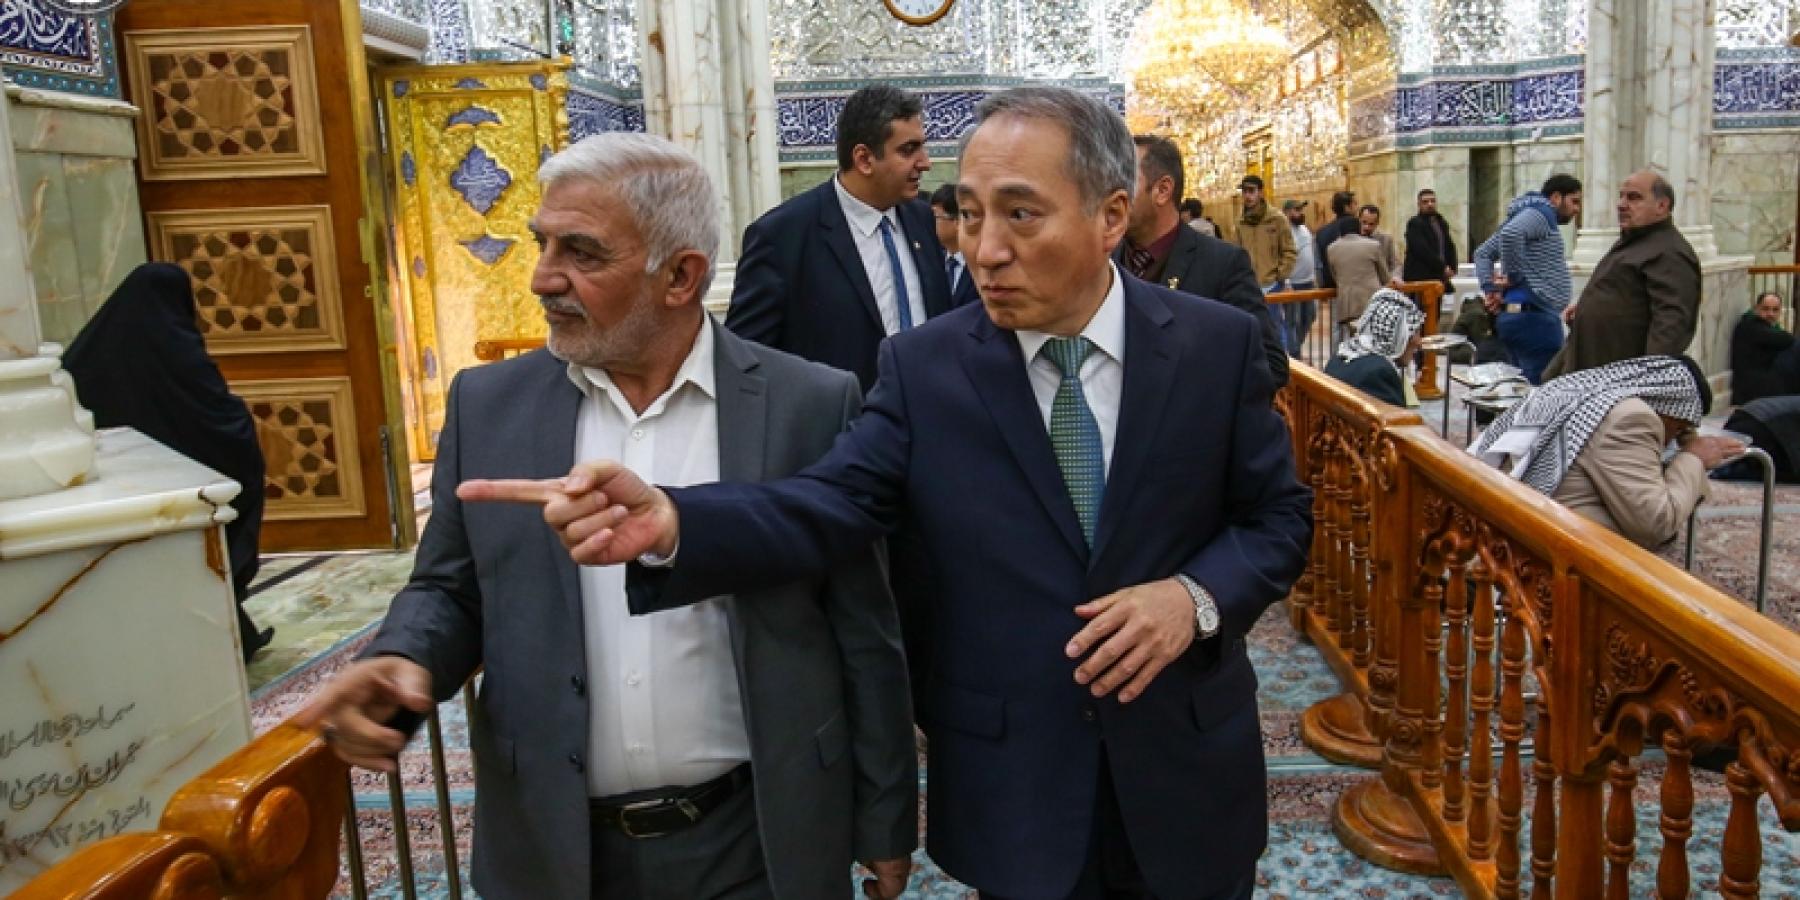 سفير كوريا الجنوبية لدى العراق: الإمام علي (عليه السلام) قائد عظيم وهو للعالم أجمع وليس للمسلمين فقط